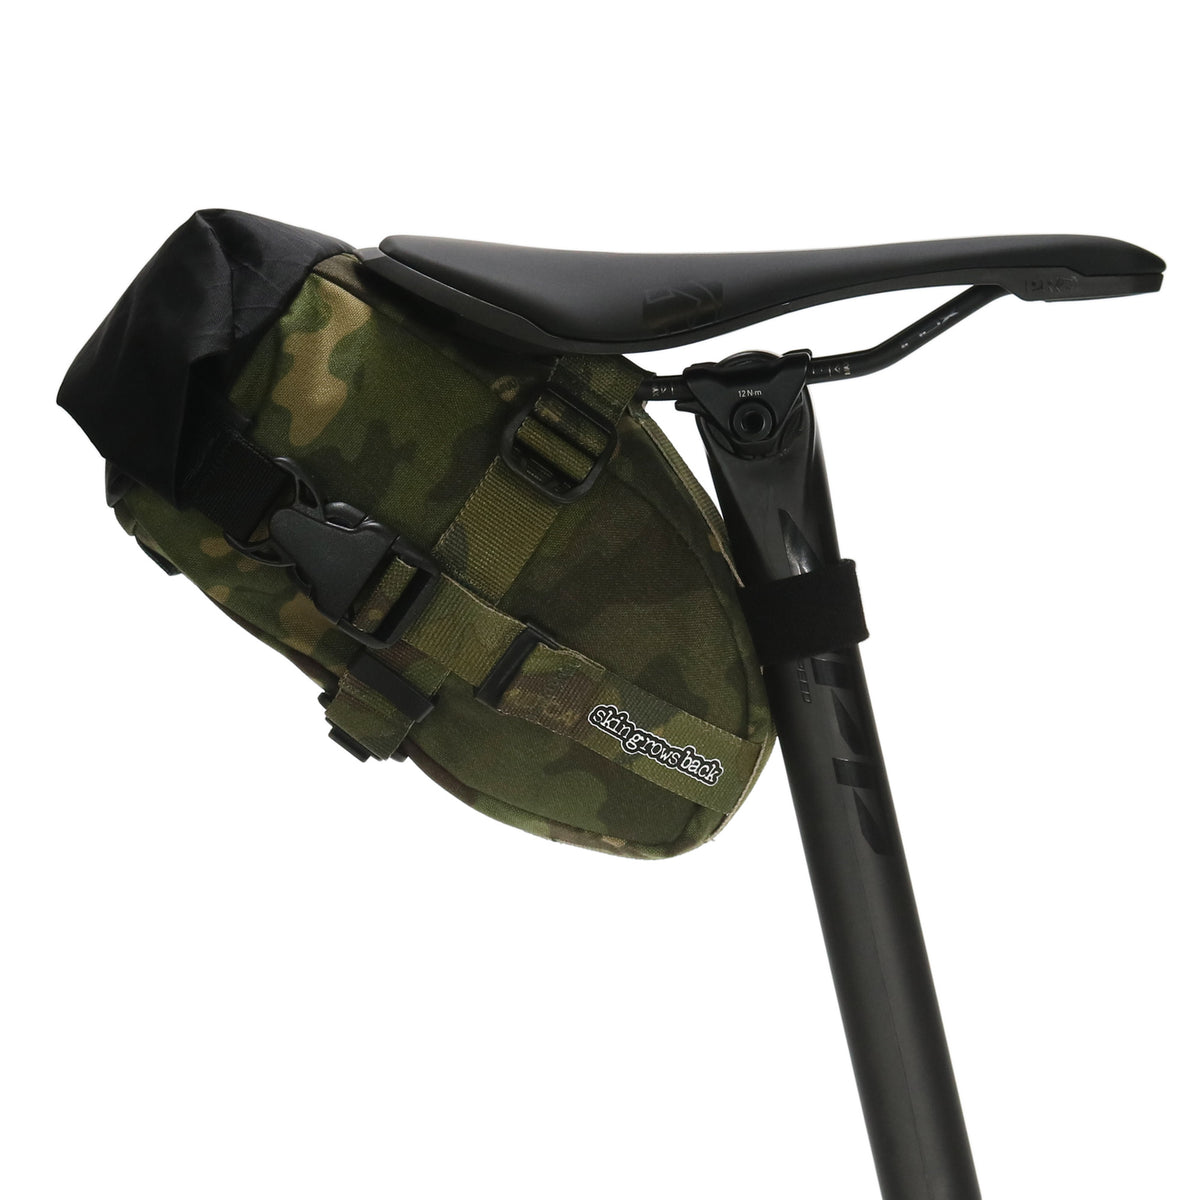 skingrowsback flash pak bike packing saddle bag multicam tropic